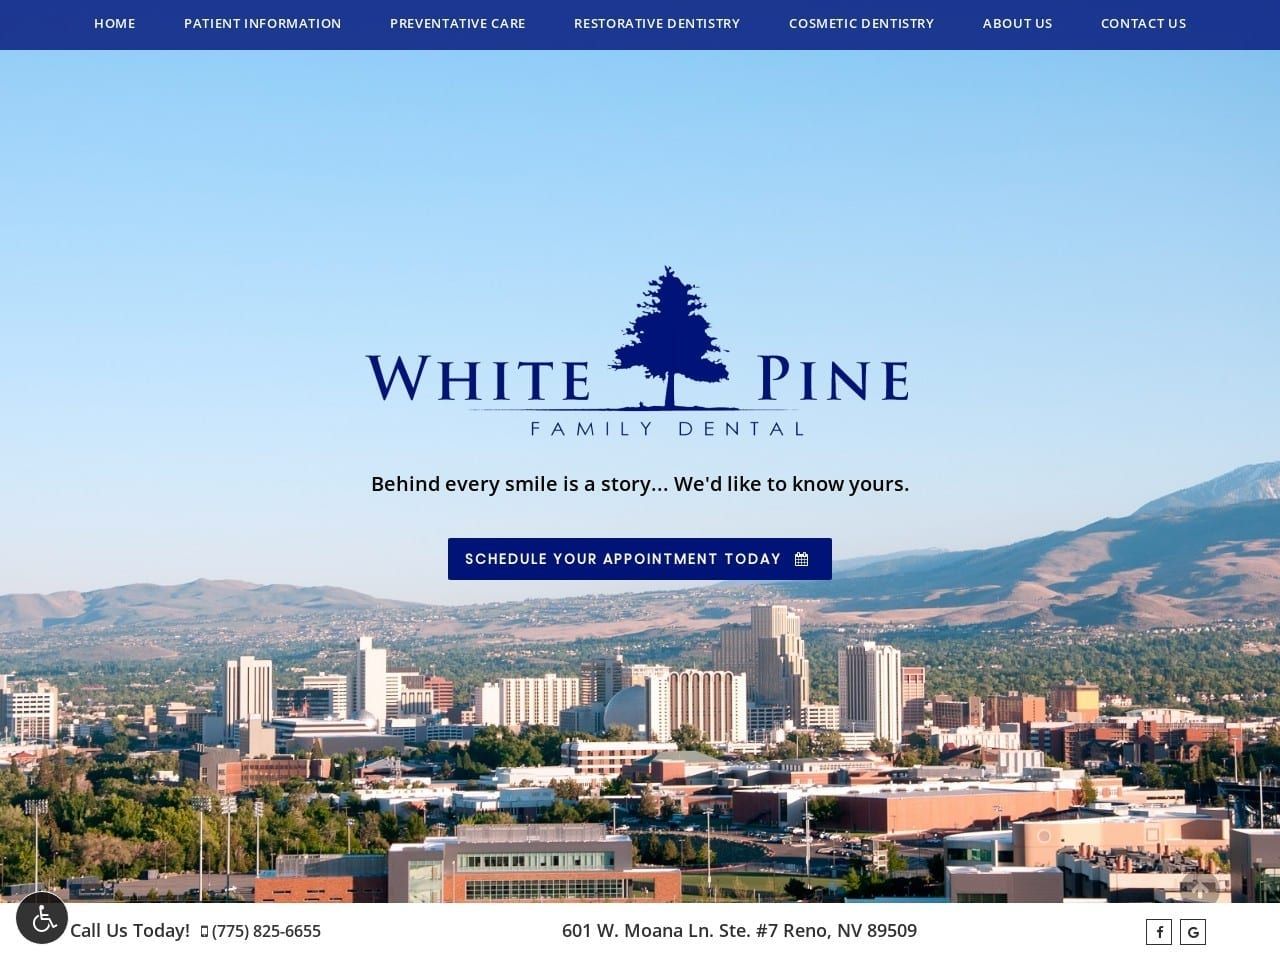 White Pine Family Dentist Website Screenshot from whitepinefamilydental.com